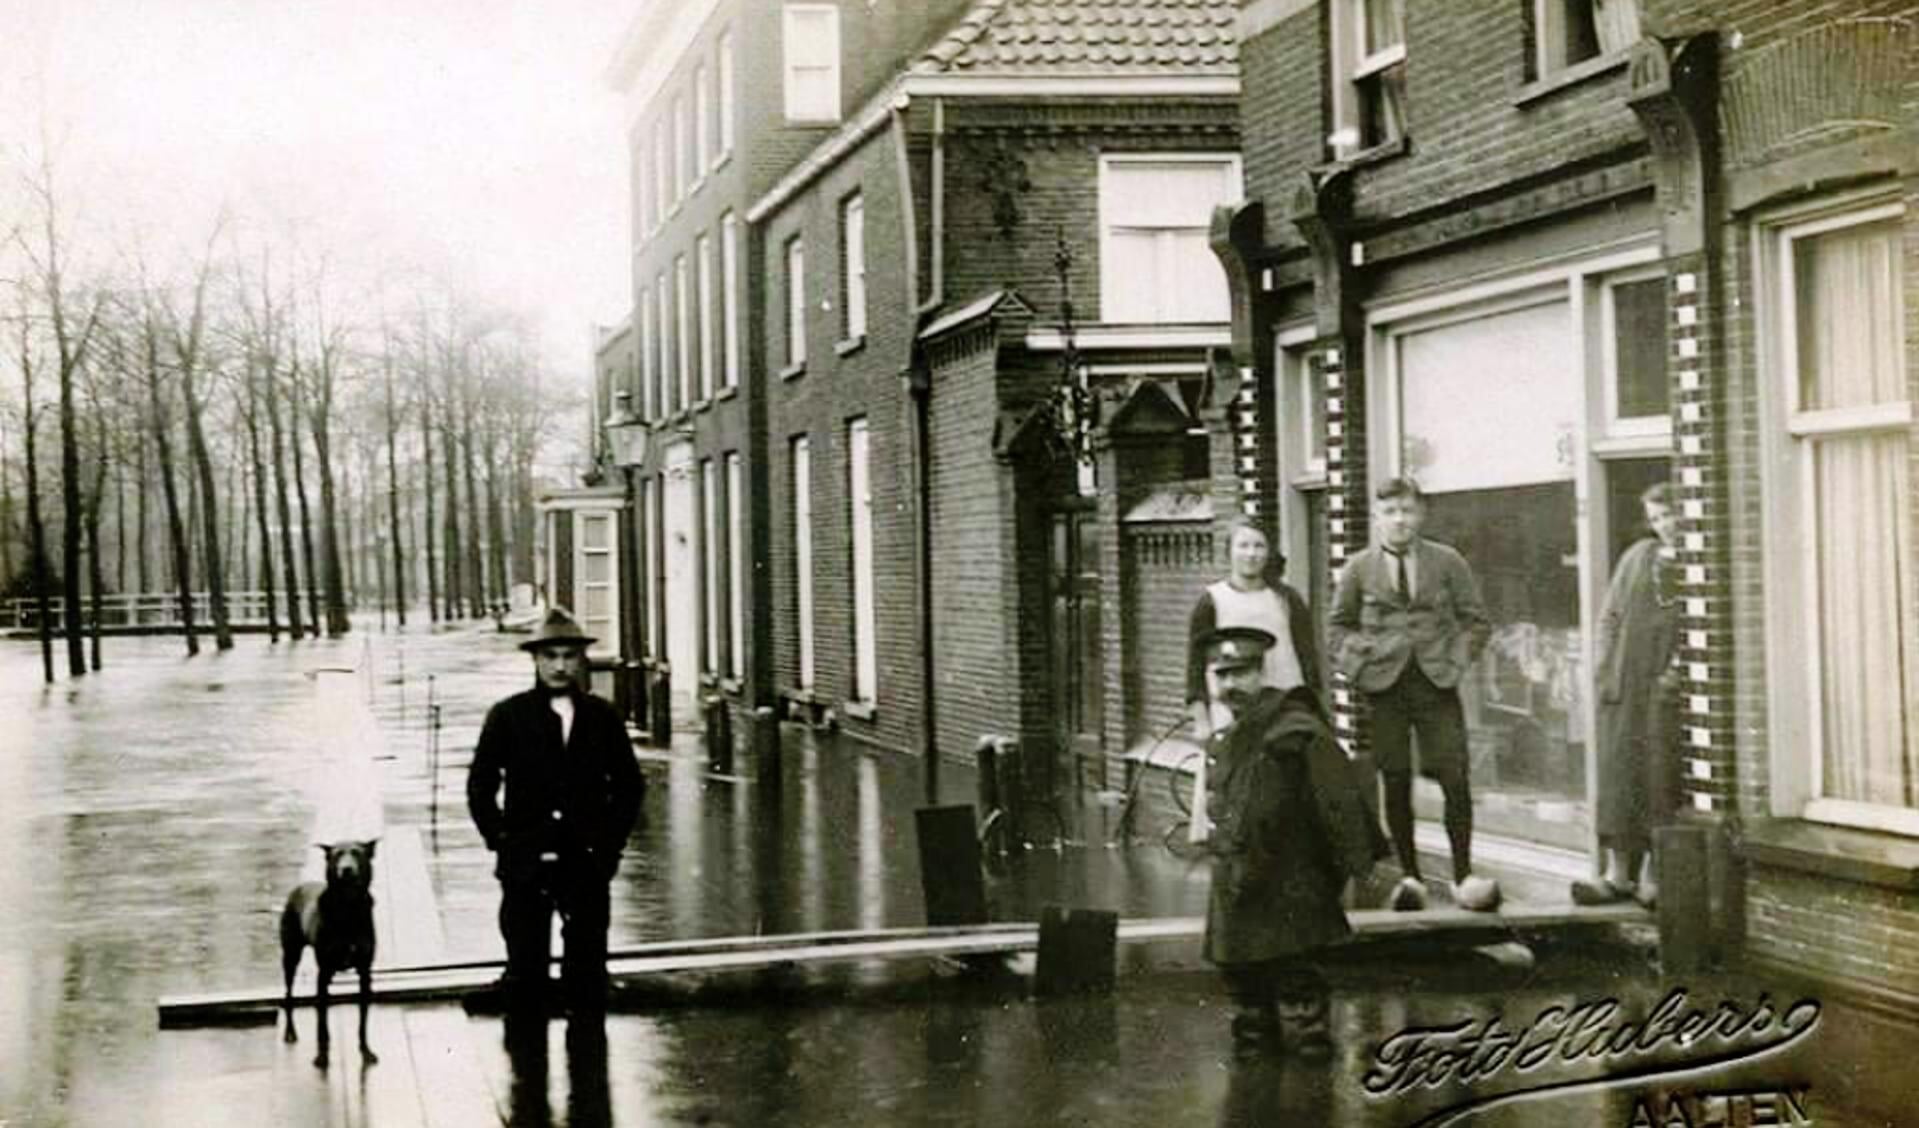 Aalten circa 1926, Dijkstraat, overstroming bij kruidenierswinkel. Foto Collectie Tonnie Stoltenborg